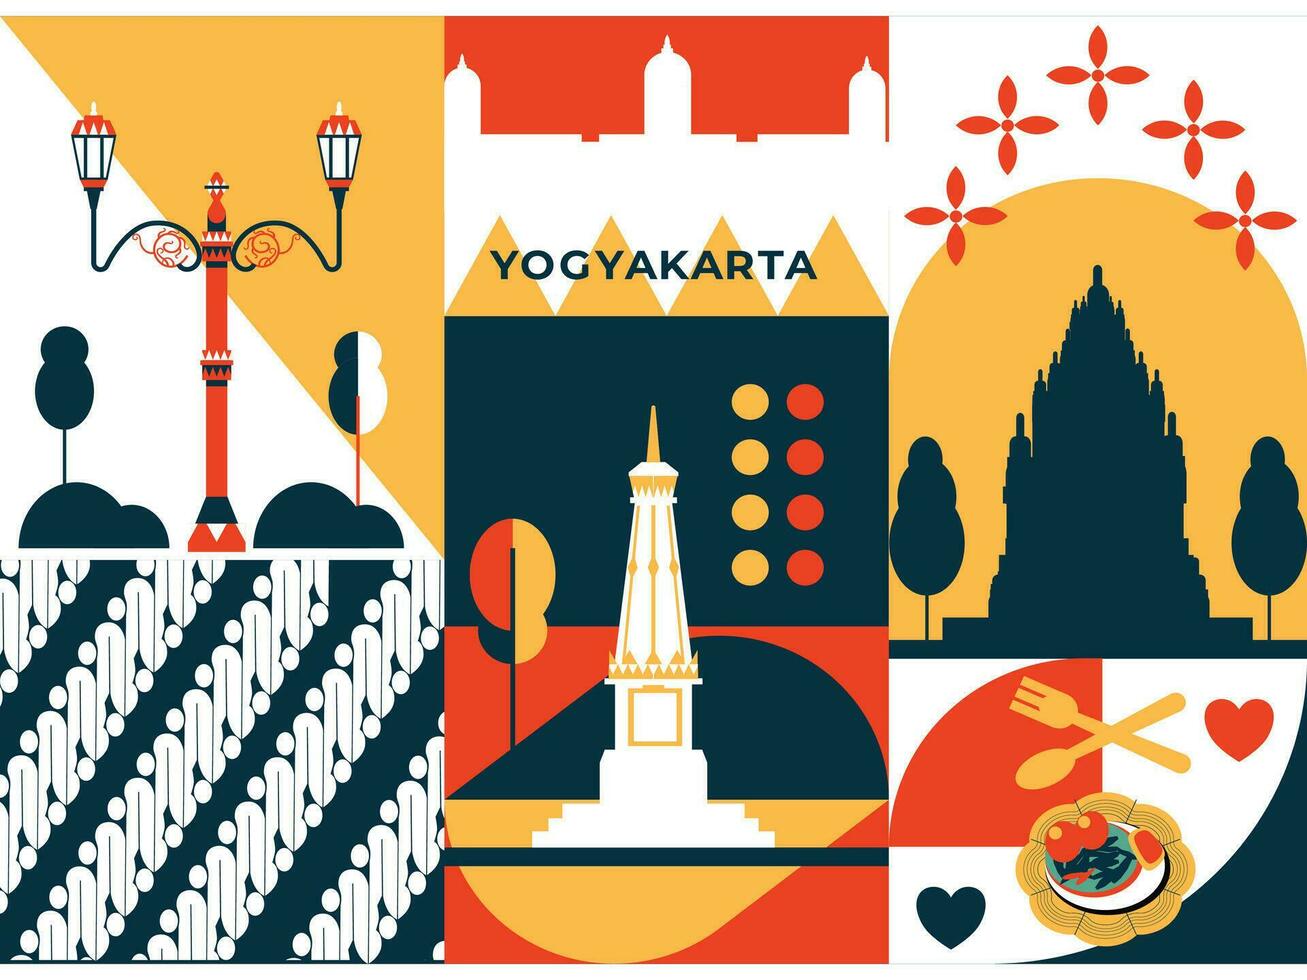 Yogyakarta turismo e viaggio grafico illustrazione vettore